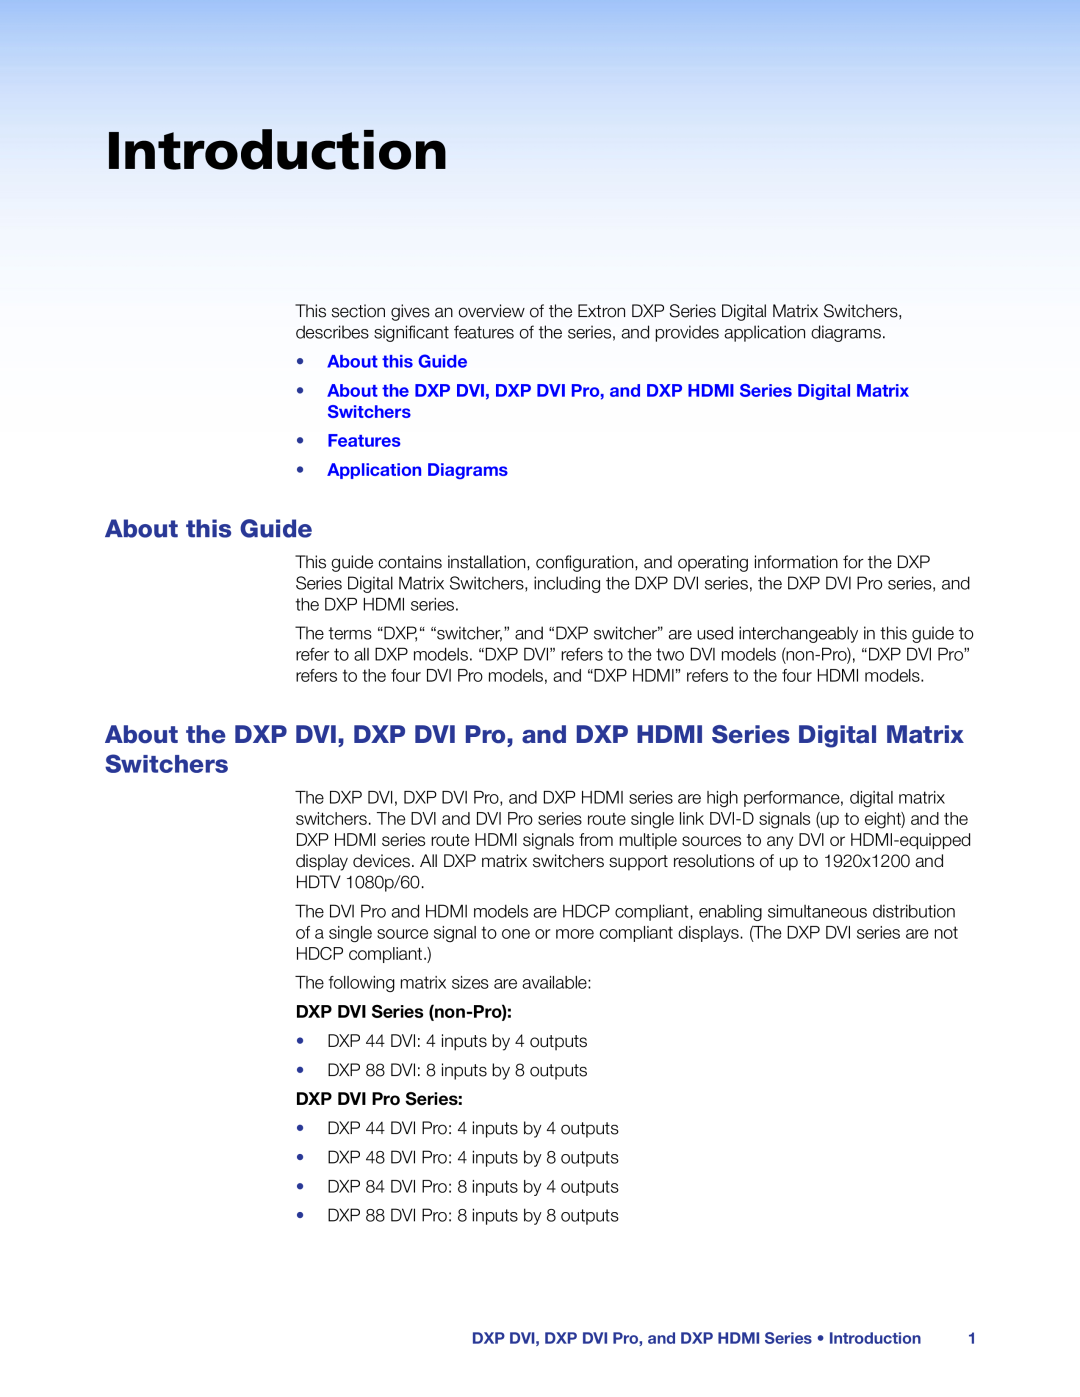 Extron electronic DXP DVI PRO Introduction, About this Guide, Features Application Diagrams, DXP DVI Series non-Pro 